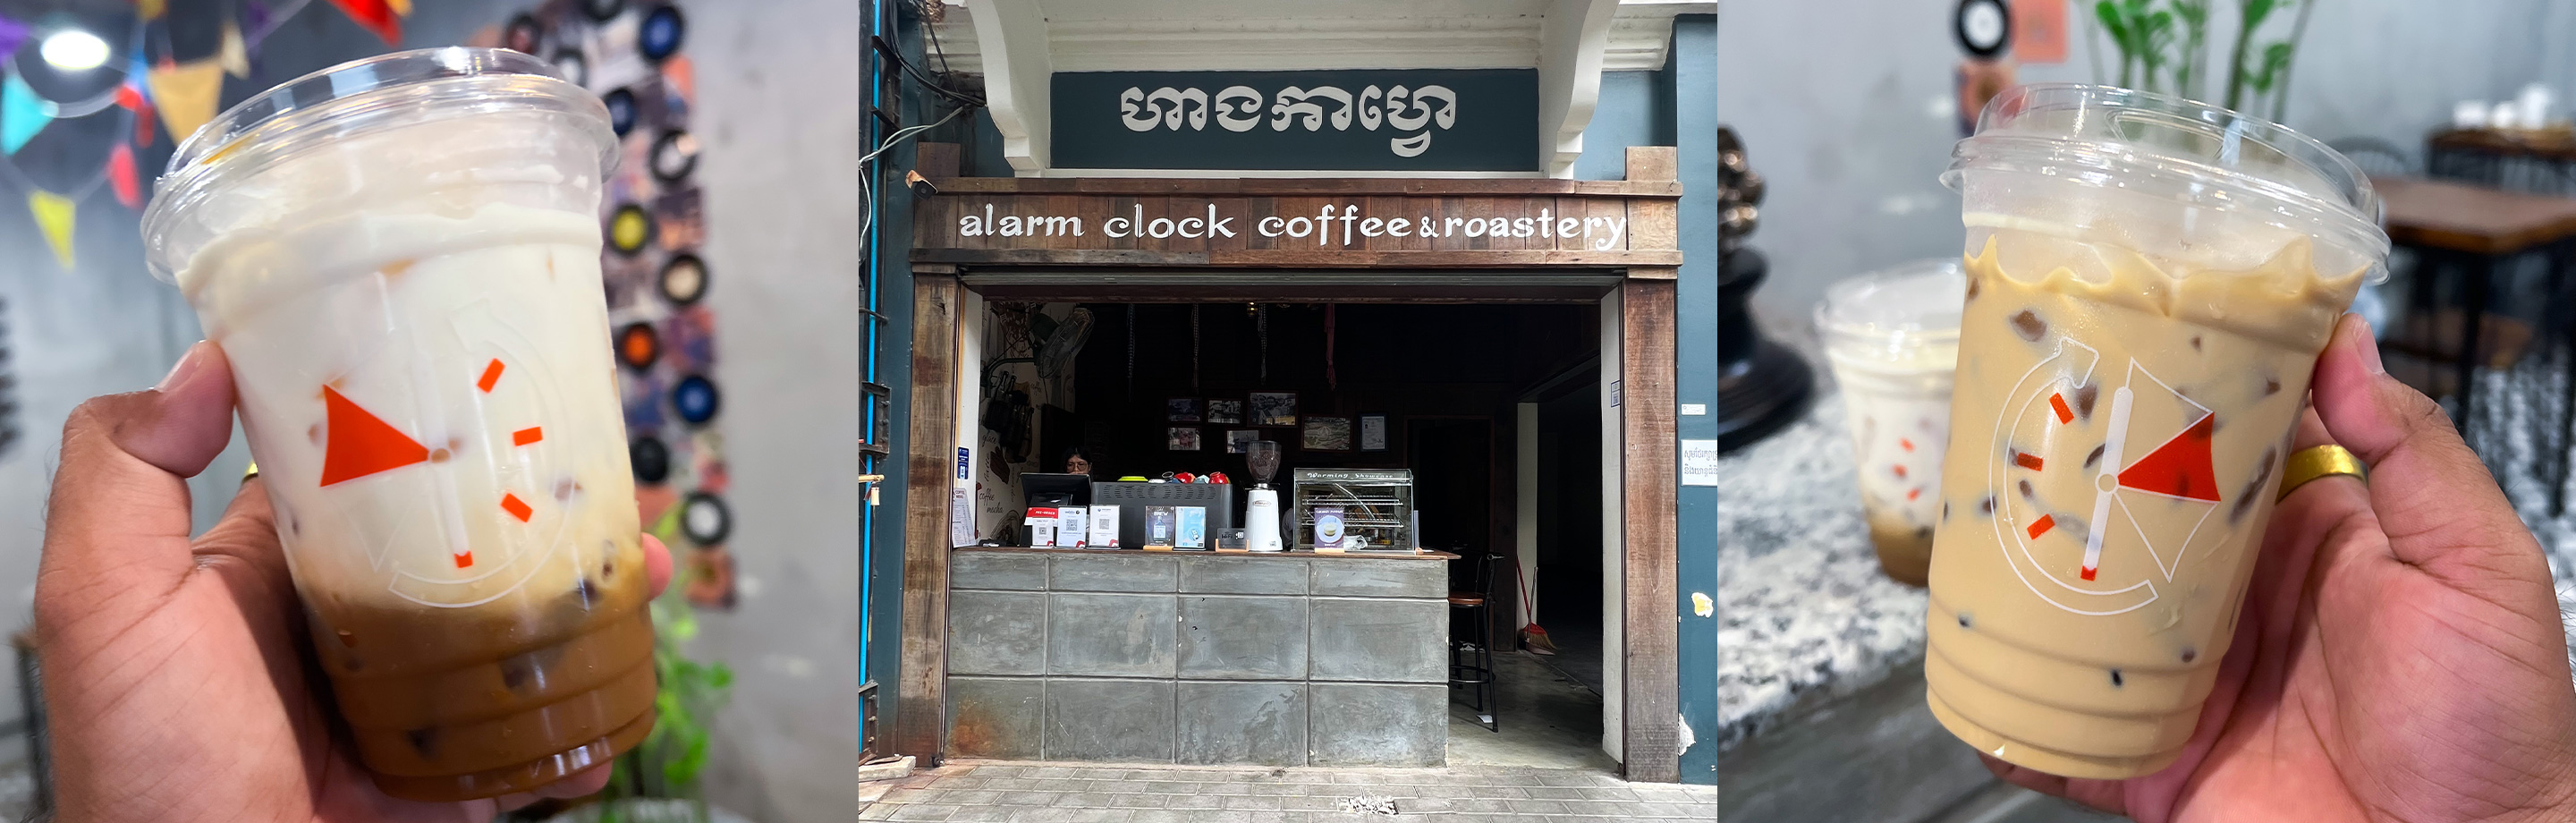 នាឡិការរោទ៍ម្ដងហើយមិនទាន់ស្វាង ទាល់តែបាន Alarm Clock Coffee ទើបស្វាង!